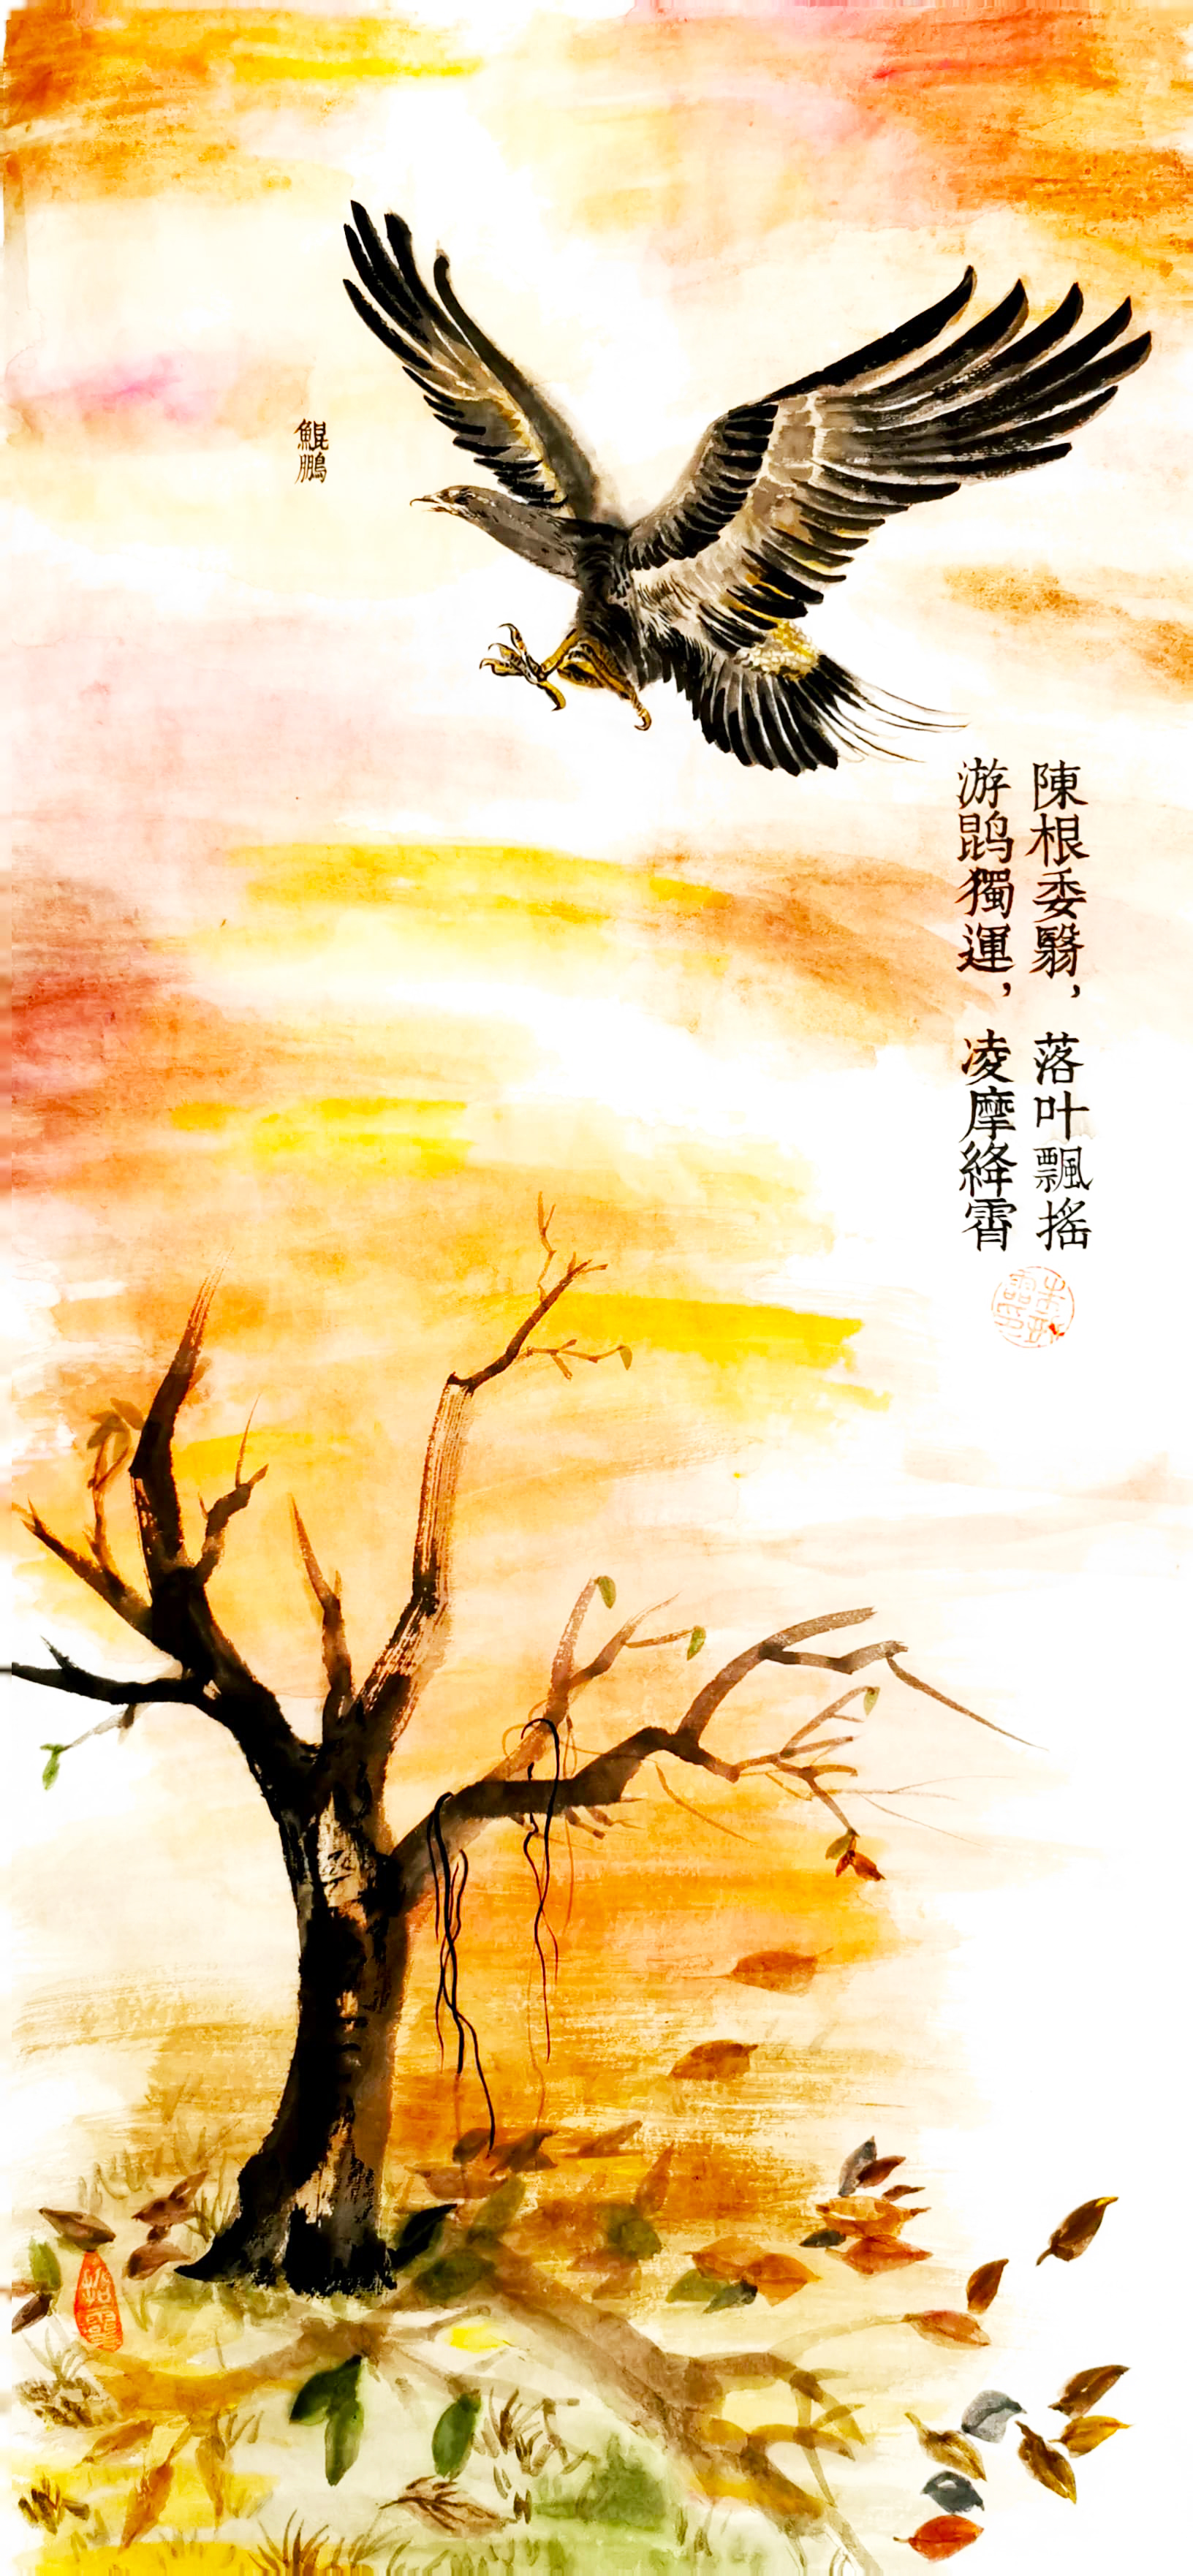 《飞龙在天 浓情端午》海内外华人艺术家共庆佳节书画展(图253)